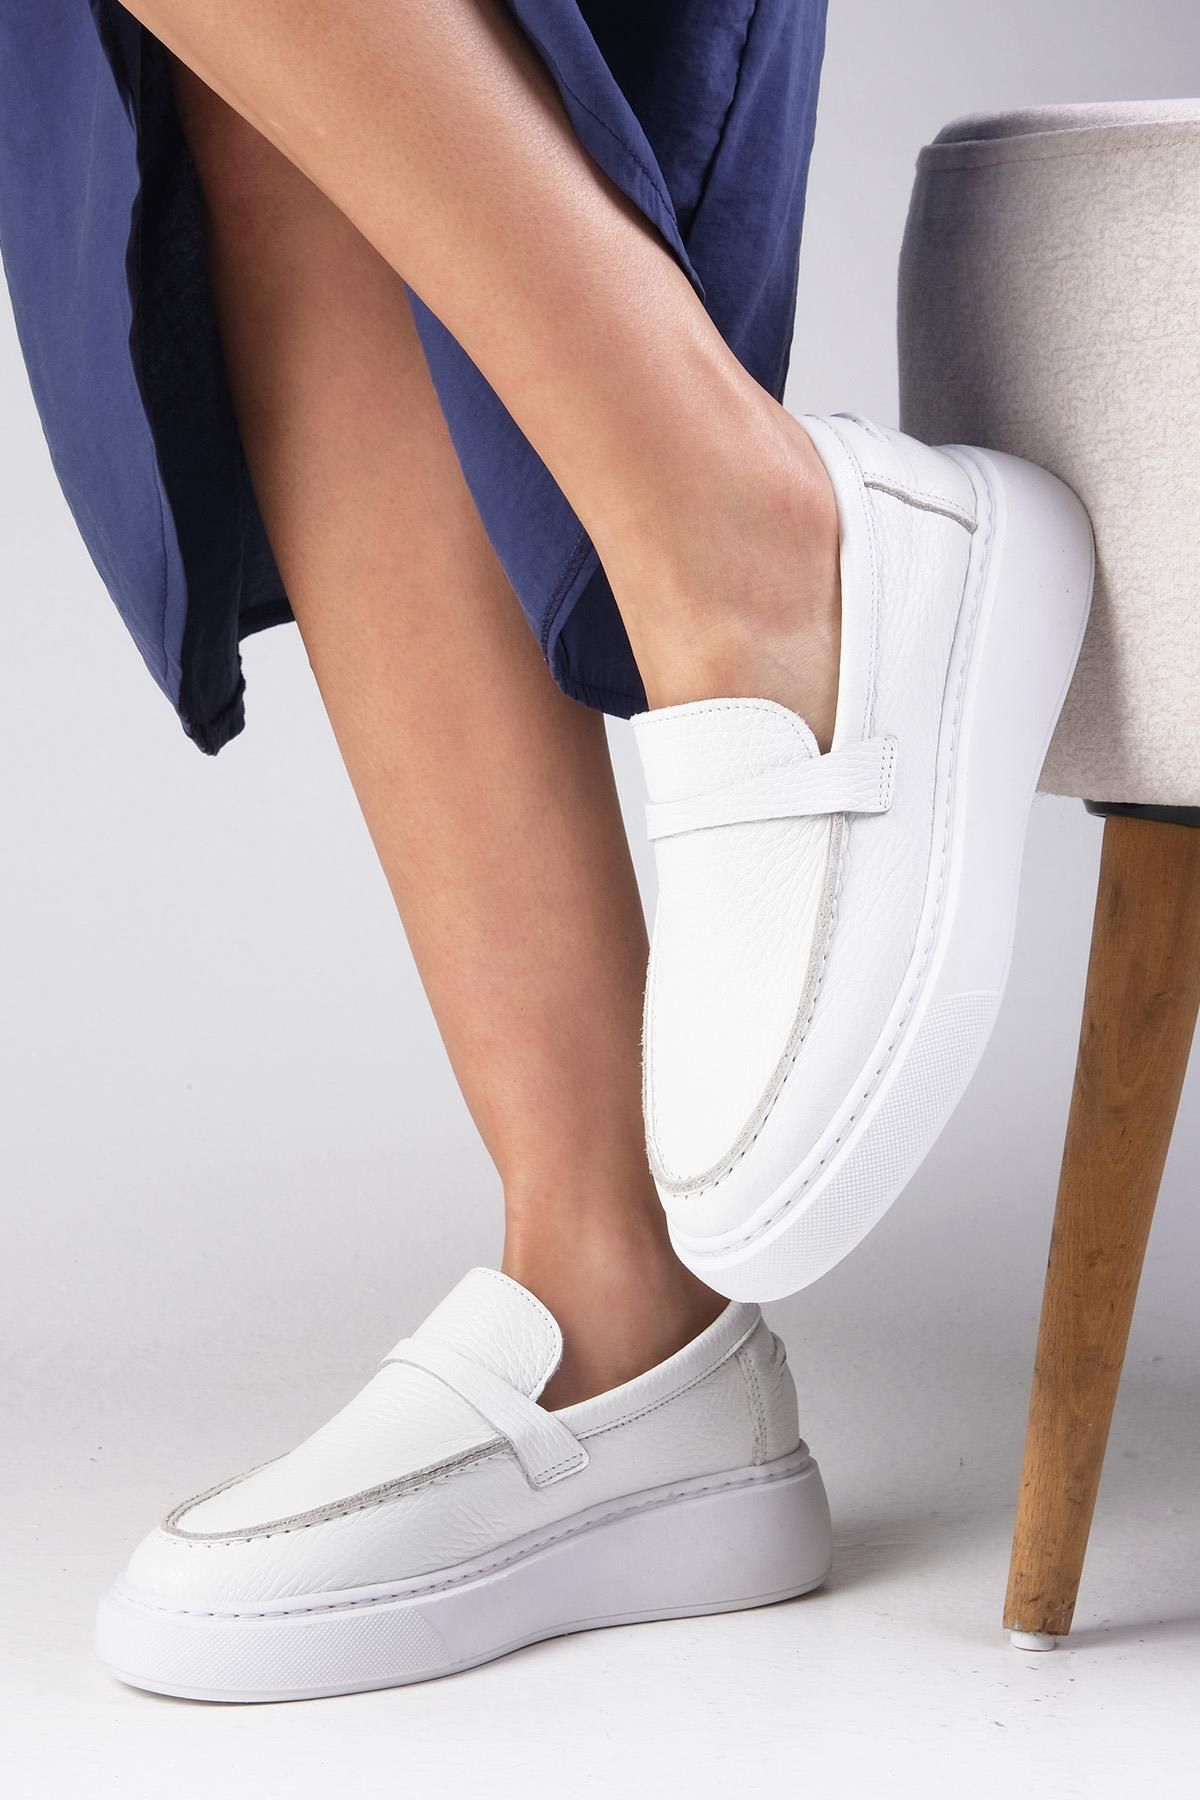 Mio Gusto Olenna Hakiki Deri Beyaz Renk Oval Burunlu Kadın Loafer Ayakkabı